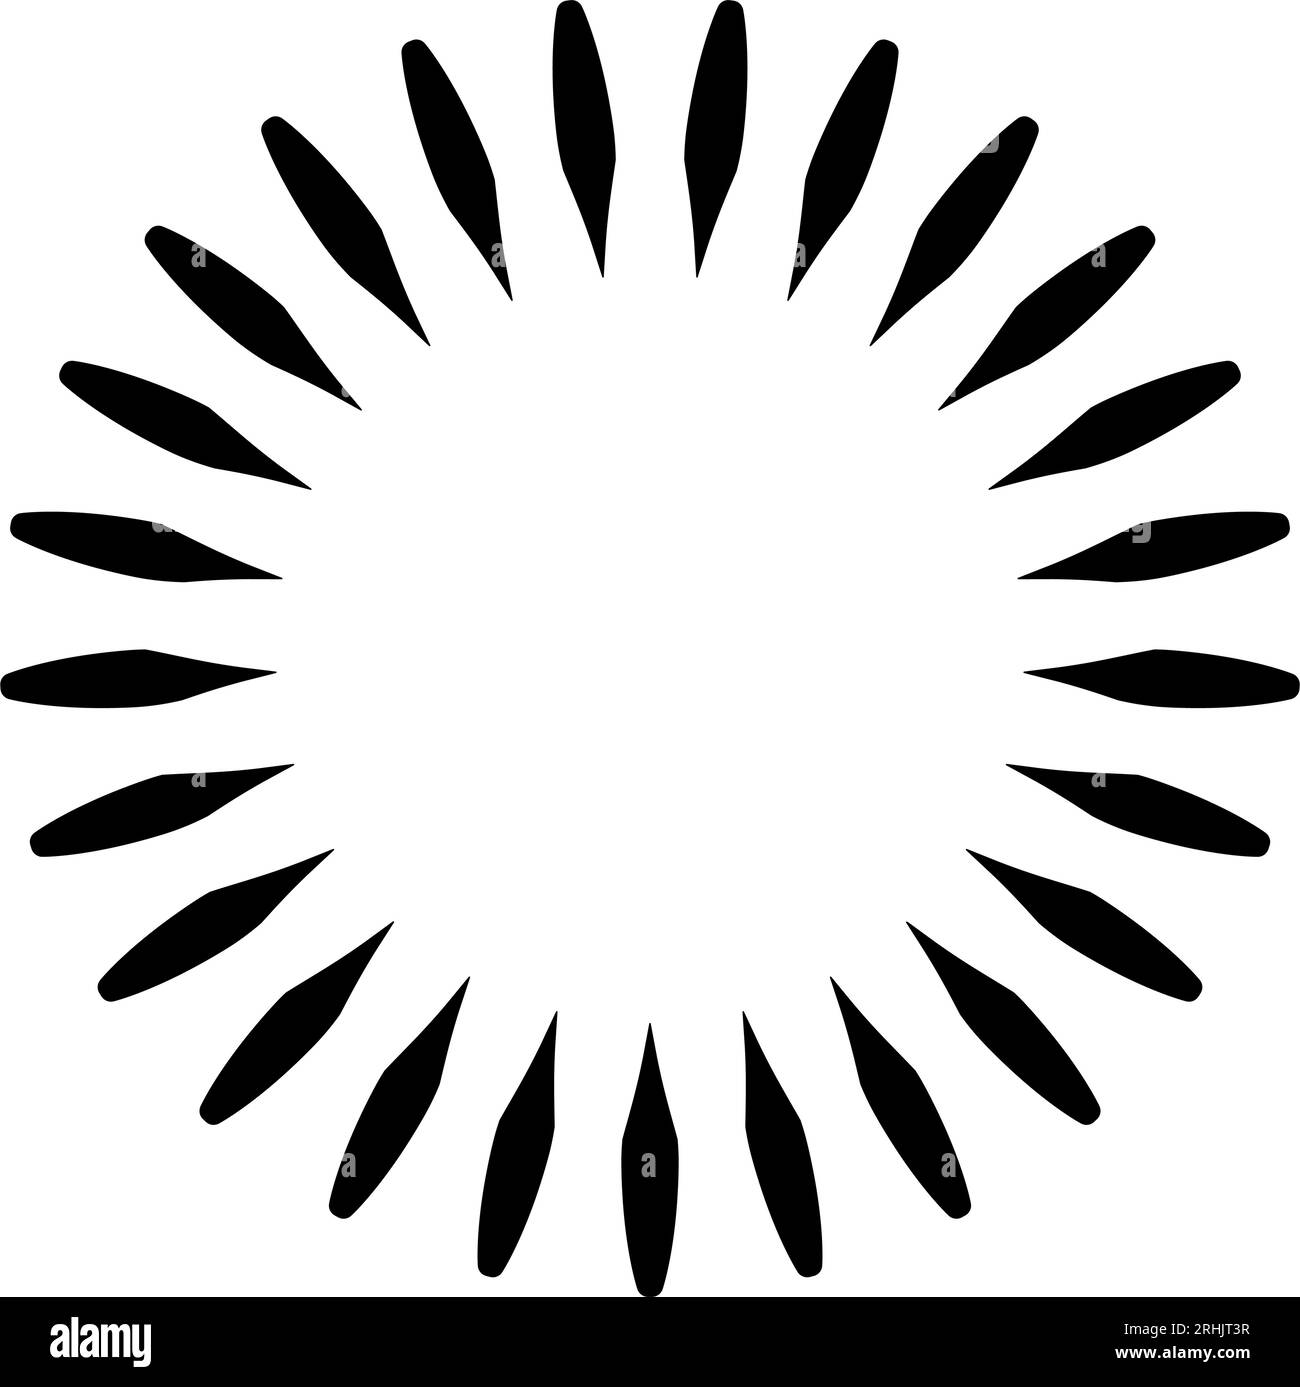 Geometric flower, star graphic design element logo. vector illustration Stock Vector